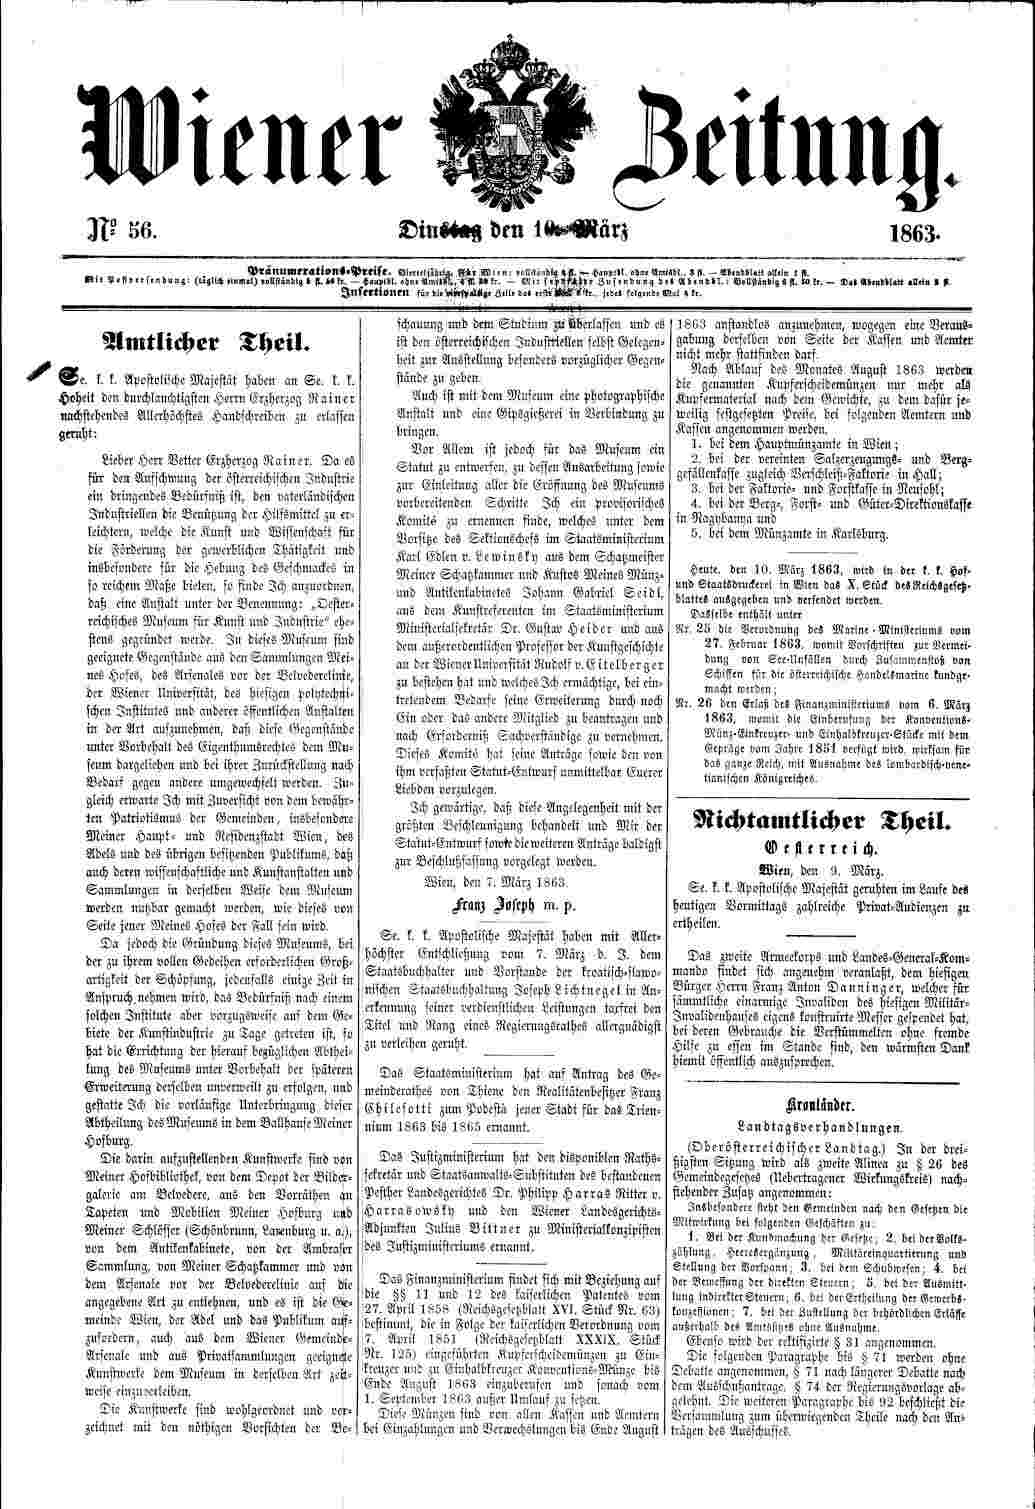 Wiener Zeitung, 10.3.1863, S. 1, Amtliche Verordnung von Kaiser Farnz Josef I.